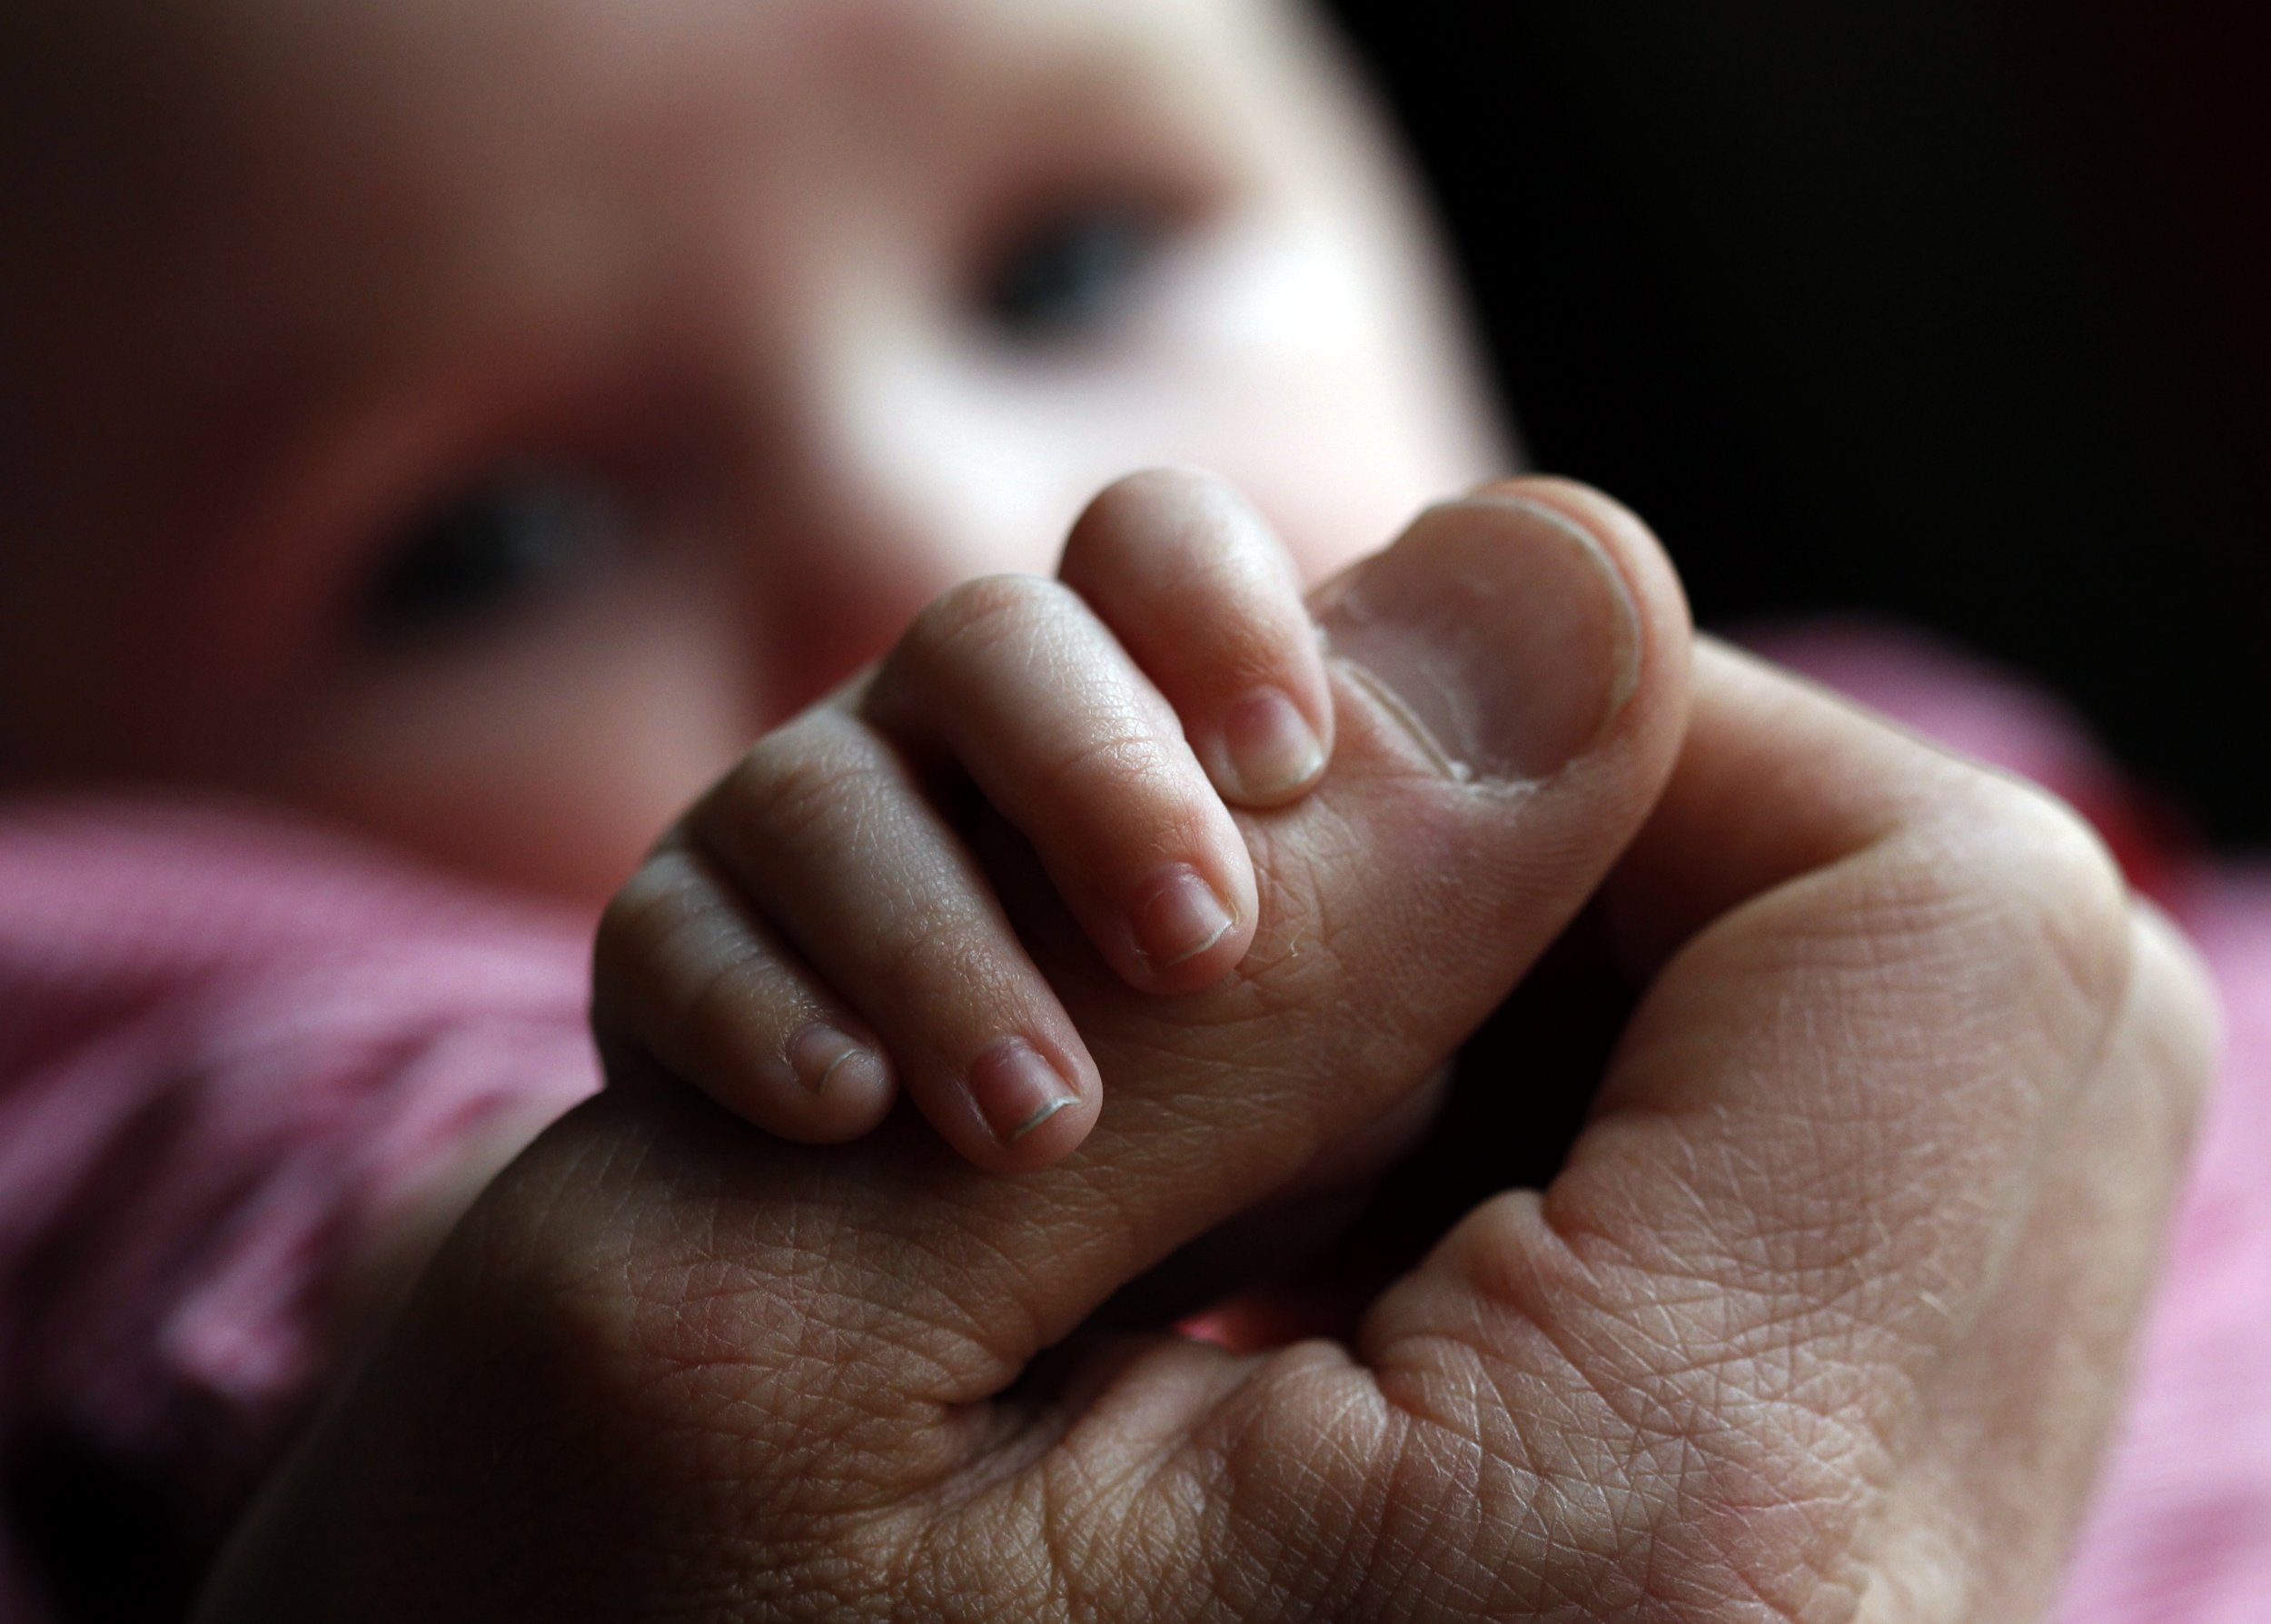 आईवीएफ से जन्मे शिशु के जन्म-मृत्यु पंजीकरण के लिए पिता की जानकारी मांगना उचित नहीं: कोर्ट